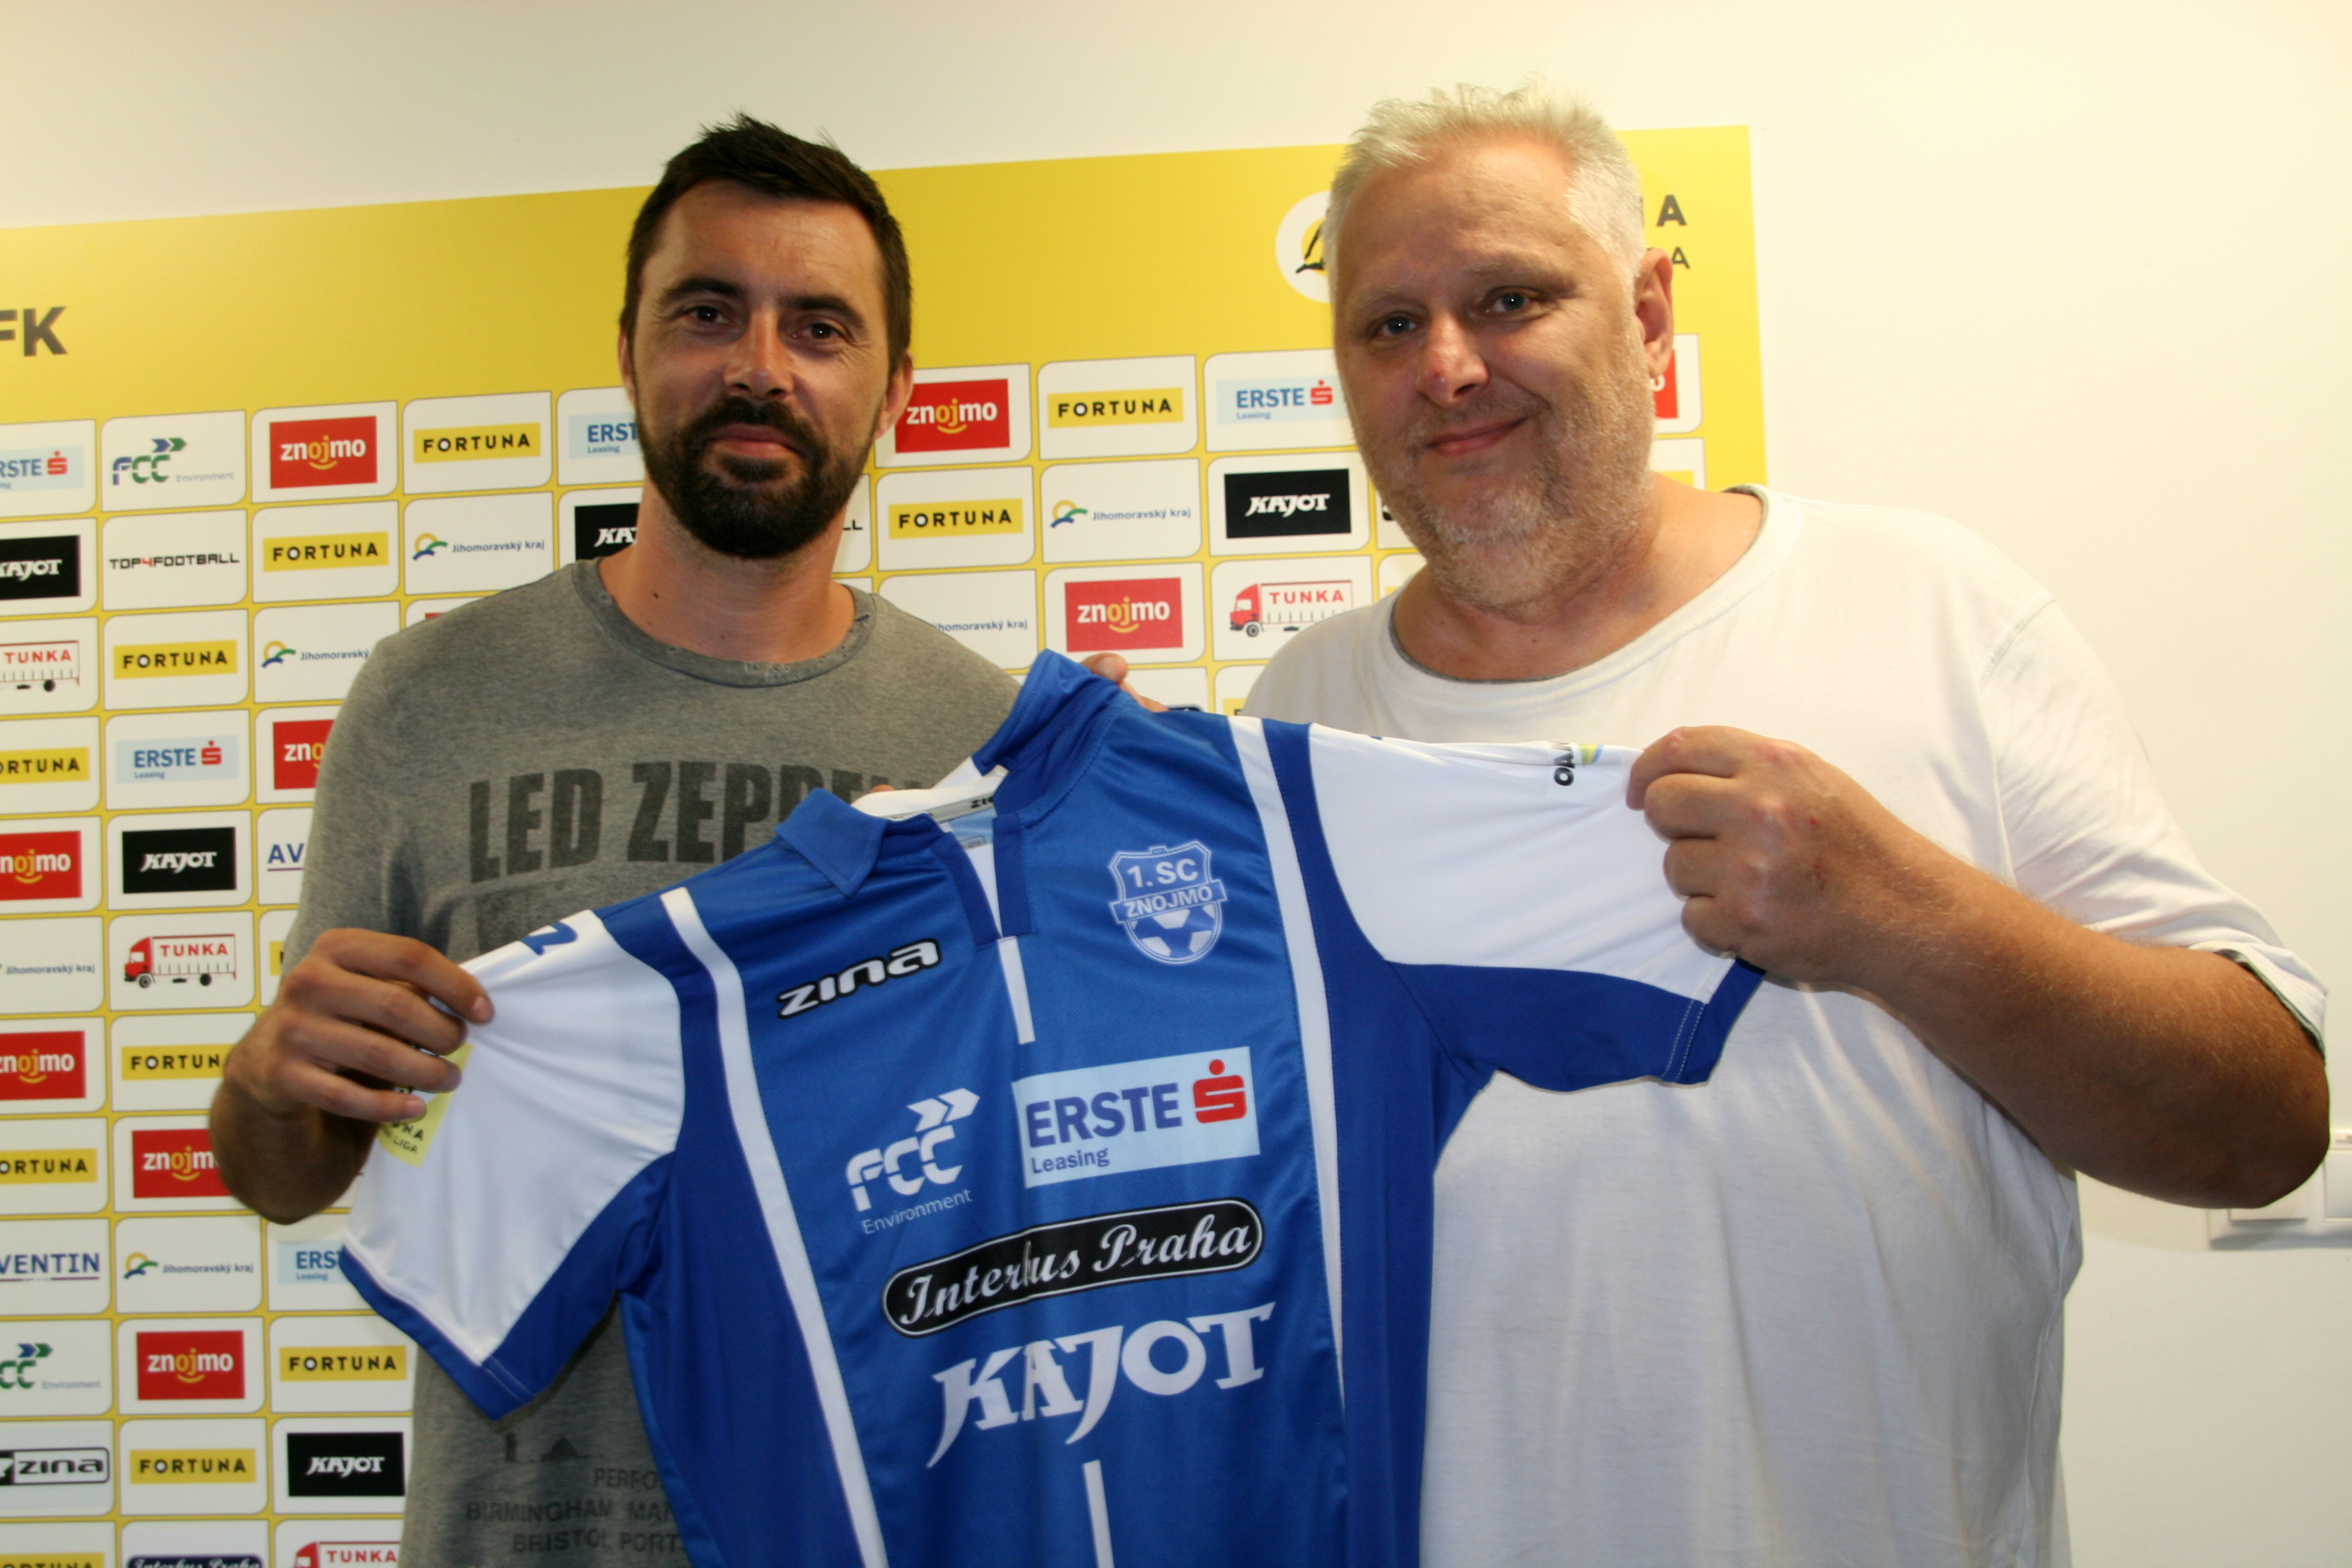 Prvn posilou klubu v nov sezon je Michal Ordo!